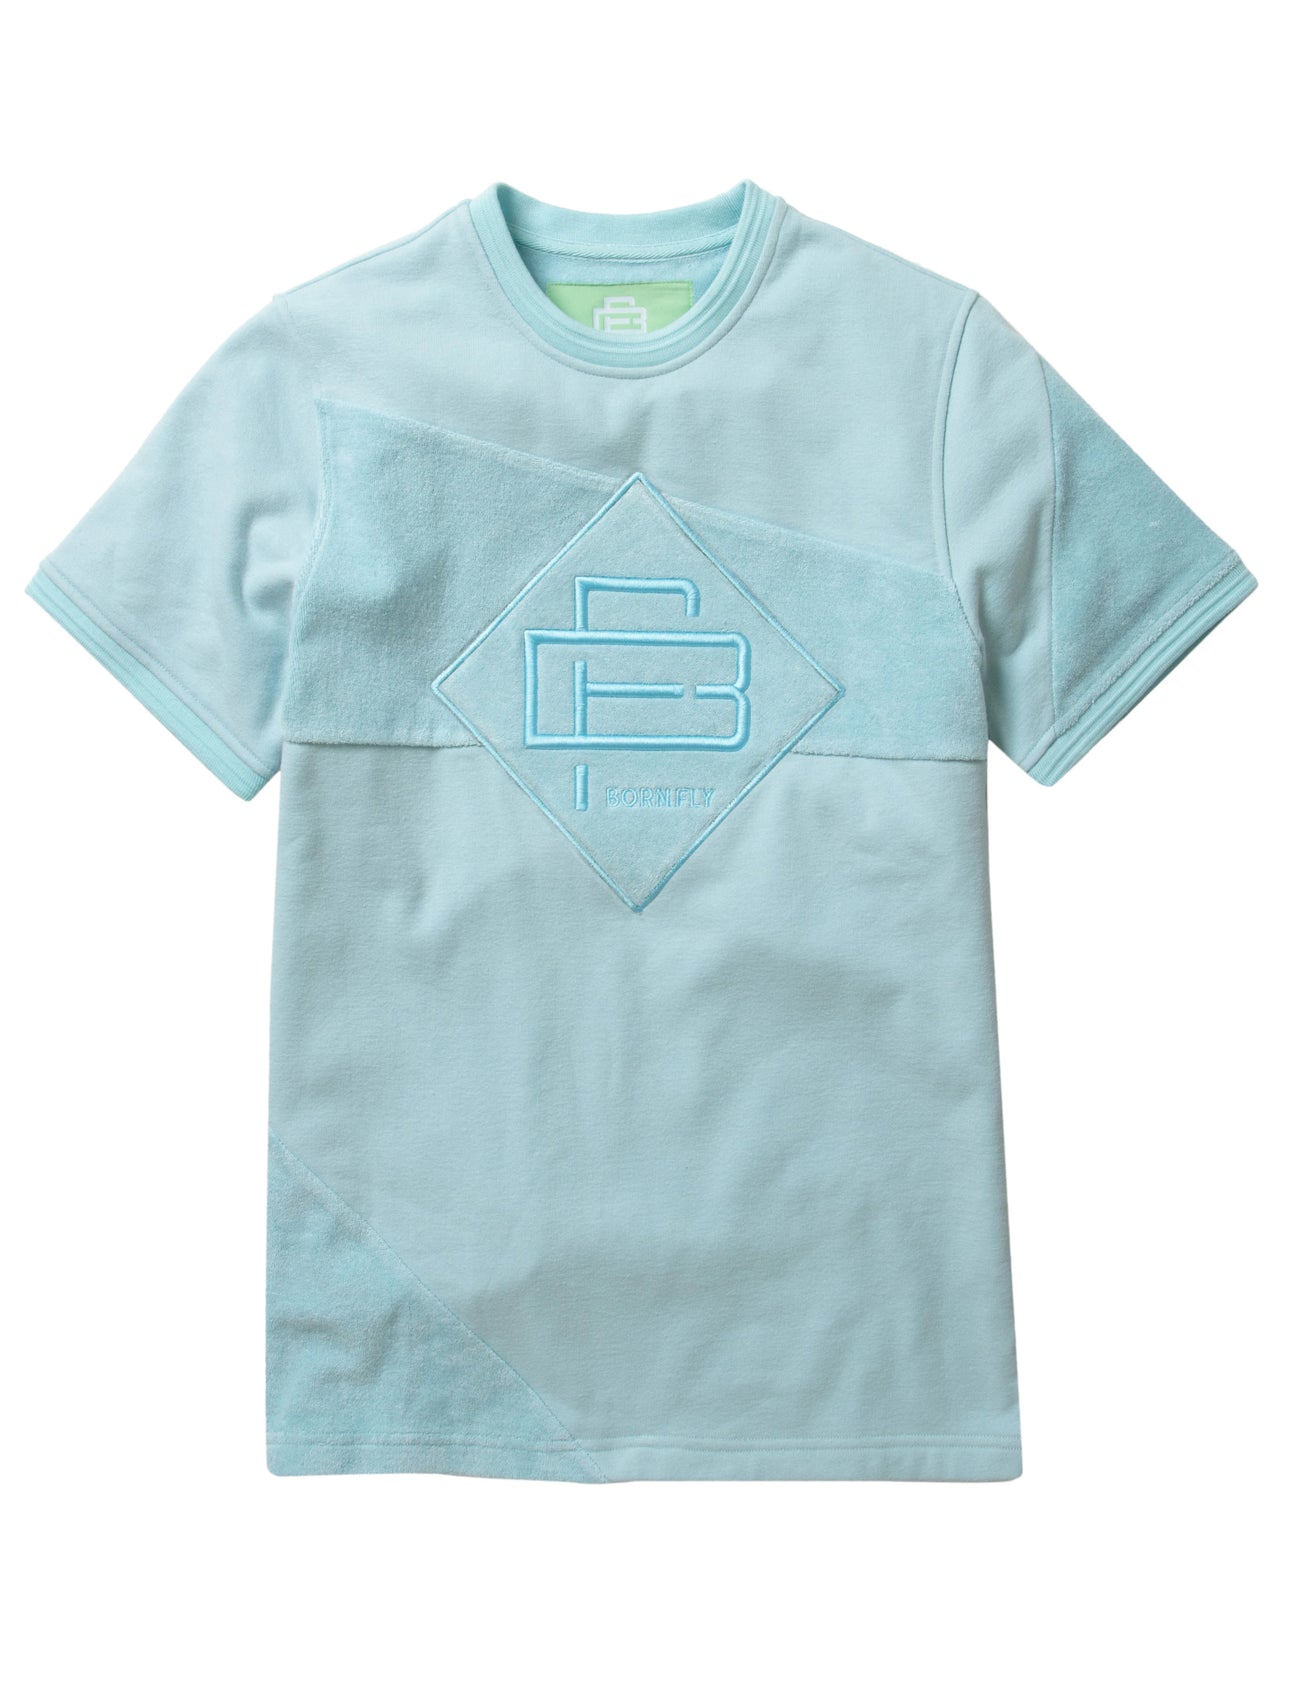 Powder Blue Born Fly T-shirt